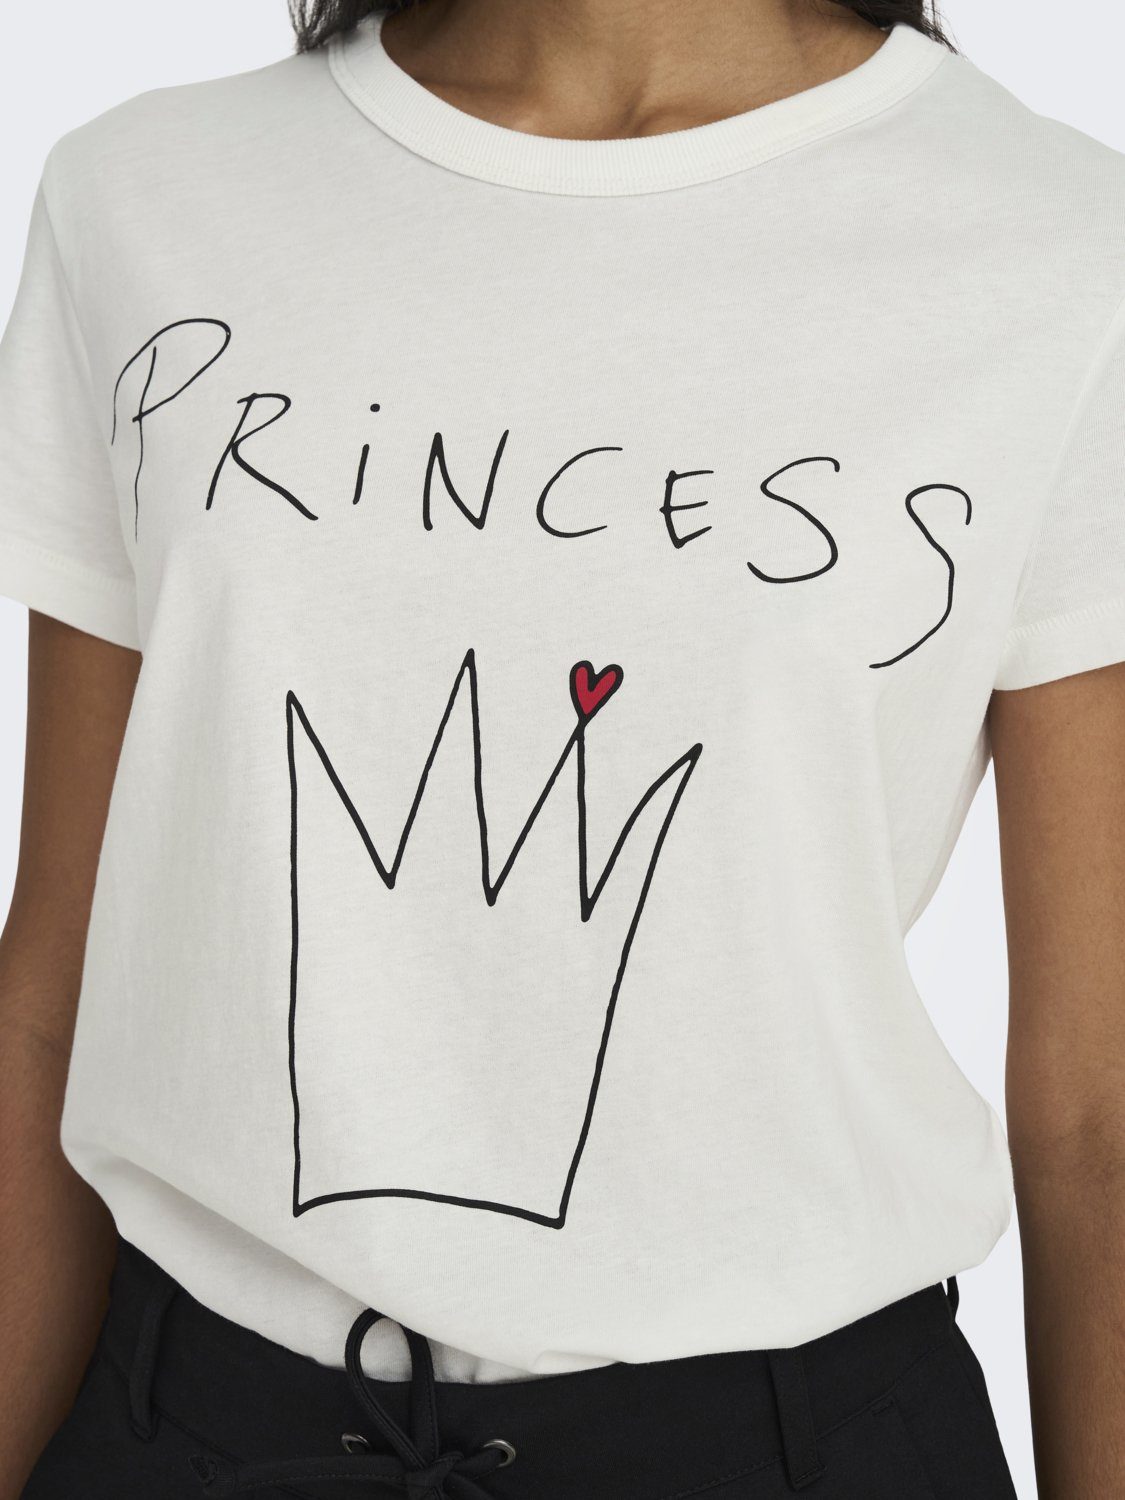 JDYMICHIGAN 2-er (2-tlg) de Schwarz-Weiß Set in YONG Princess T-Shirt 4990 Stück JACQUELINE Bedrucktes T-Shirt